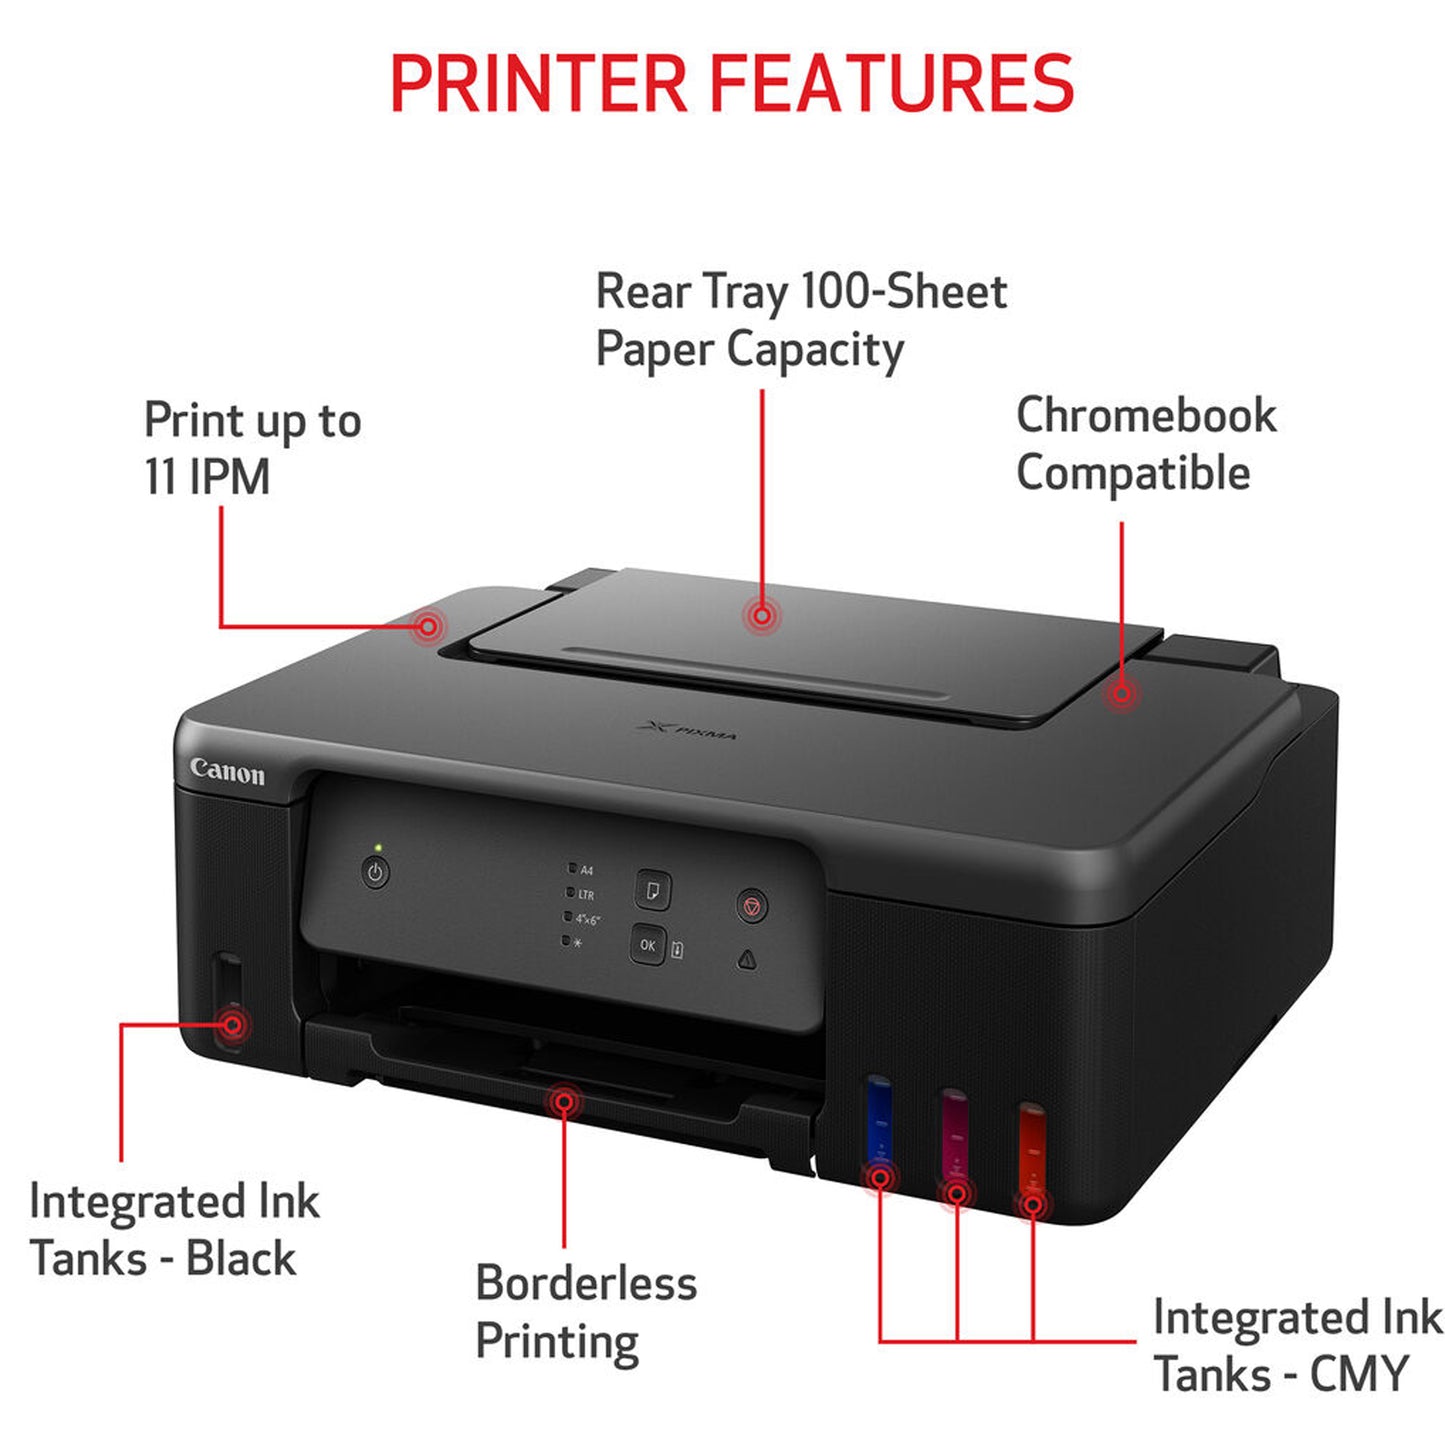 Canon PIXMA G1230 - MegaTank Inkjet Printer